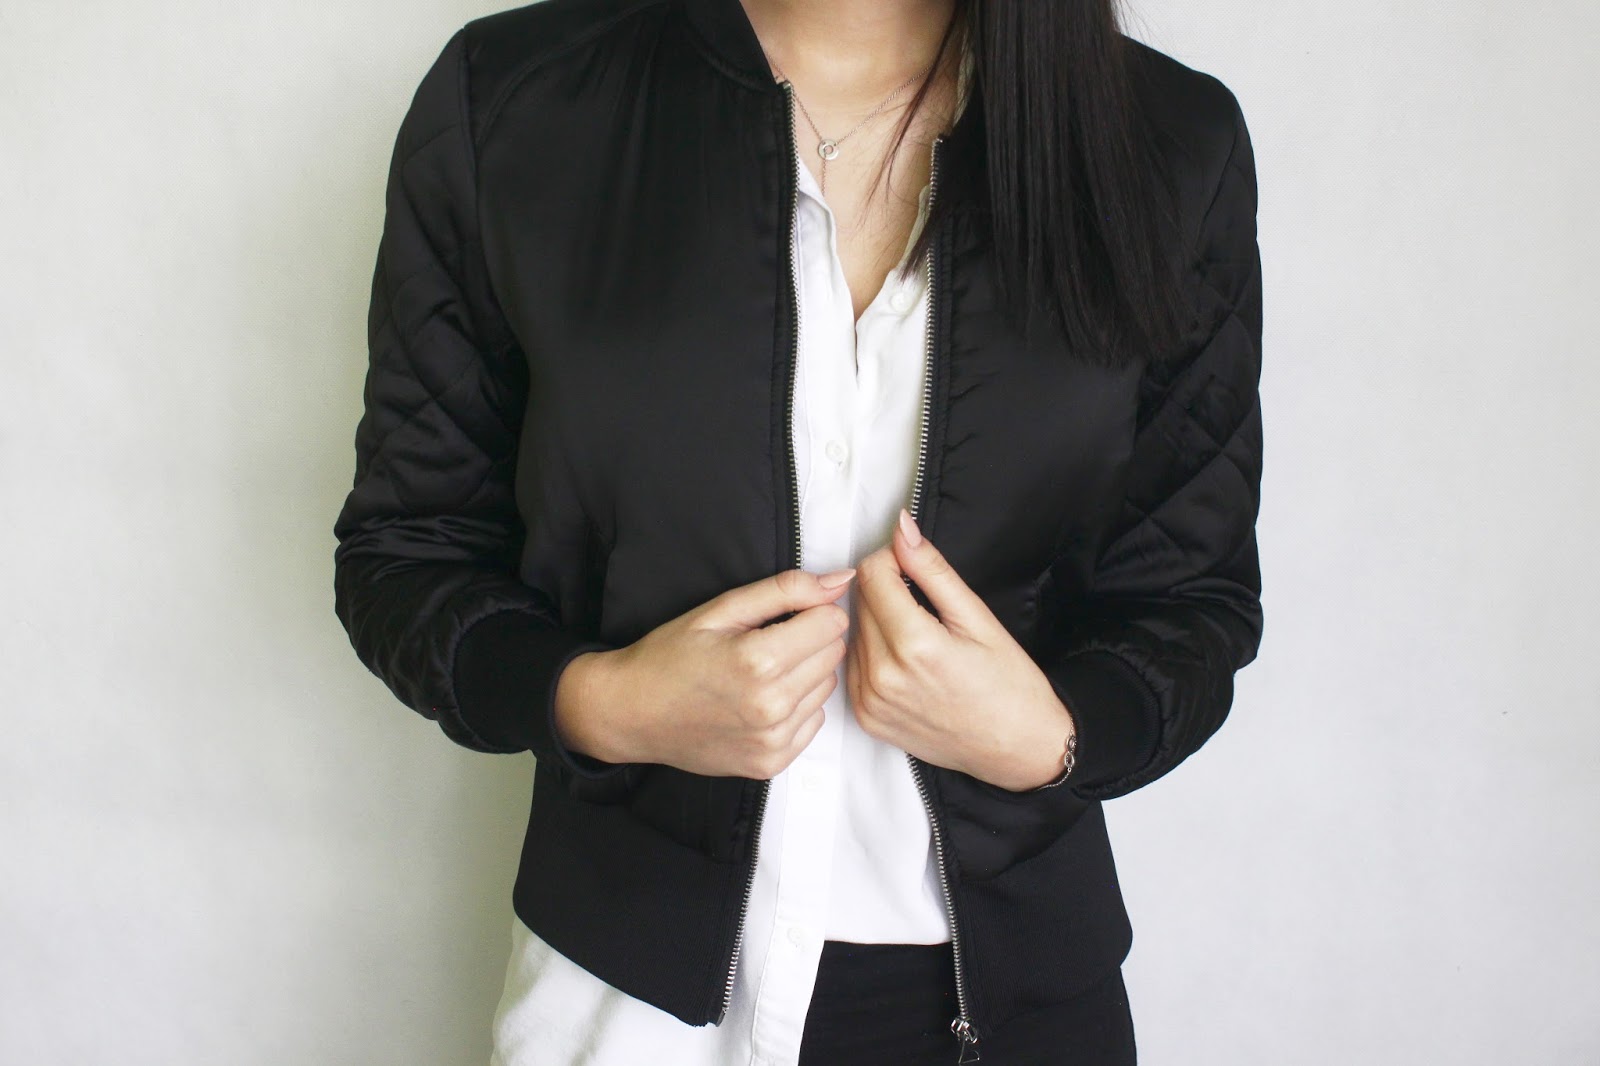 BASICS IN MY CLOSET! Leather jacket, white shirt, grey top, bomber jacket ( inspirations) - Aleksandra Wojtysiak